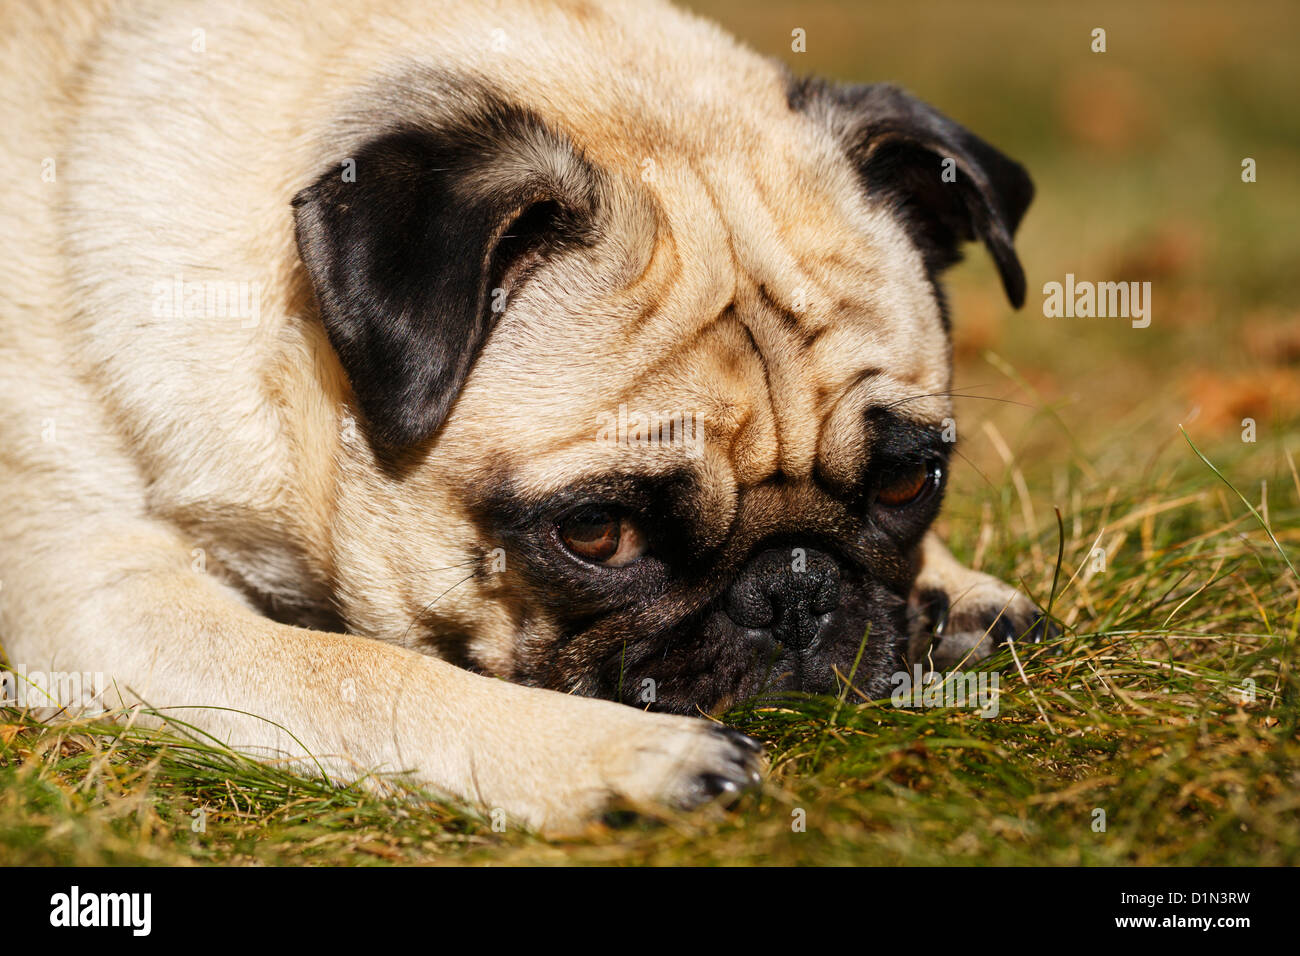 Pug dog animal couché dans l'herbe. Banque D'Images